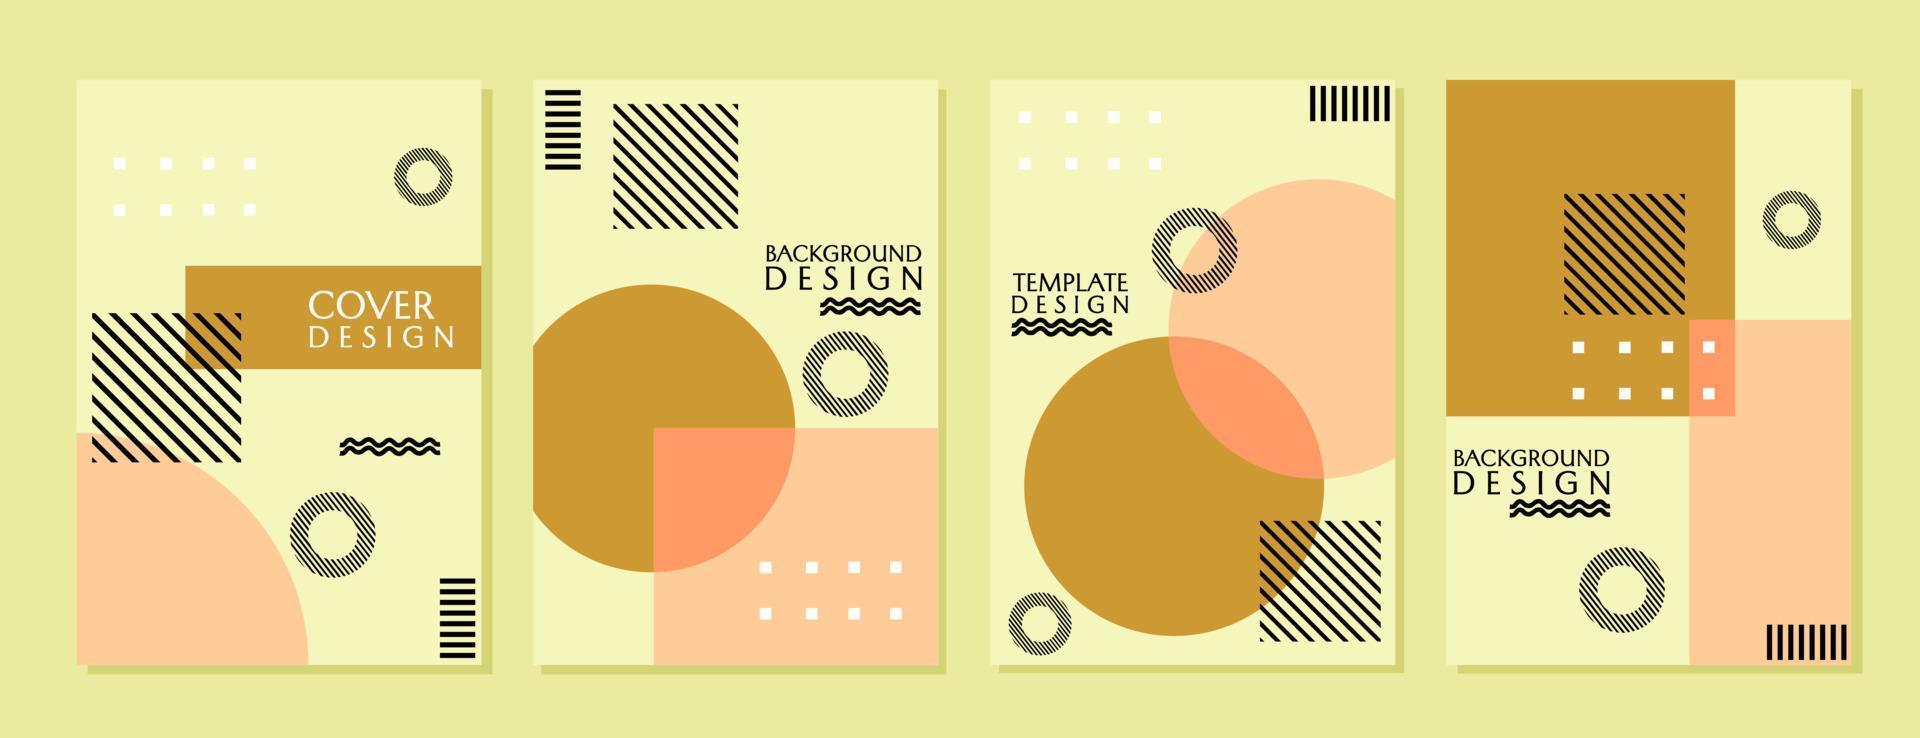 conjunto de diseños de portada geométricos mínimos y modernos. fondo abstracto marrón pastel. portadas de libros, informes, catálogos vector